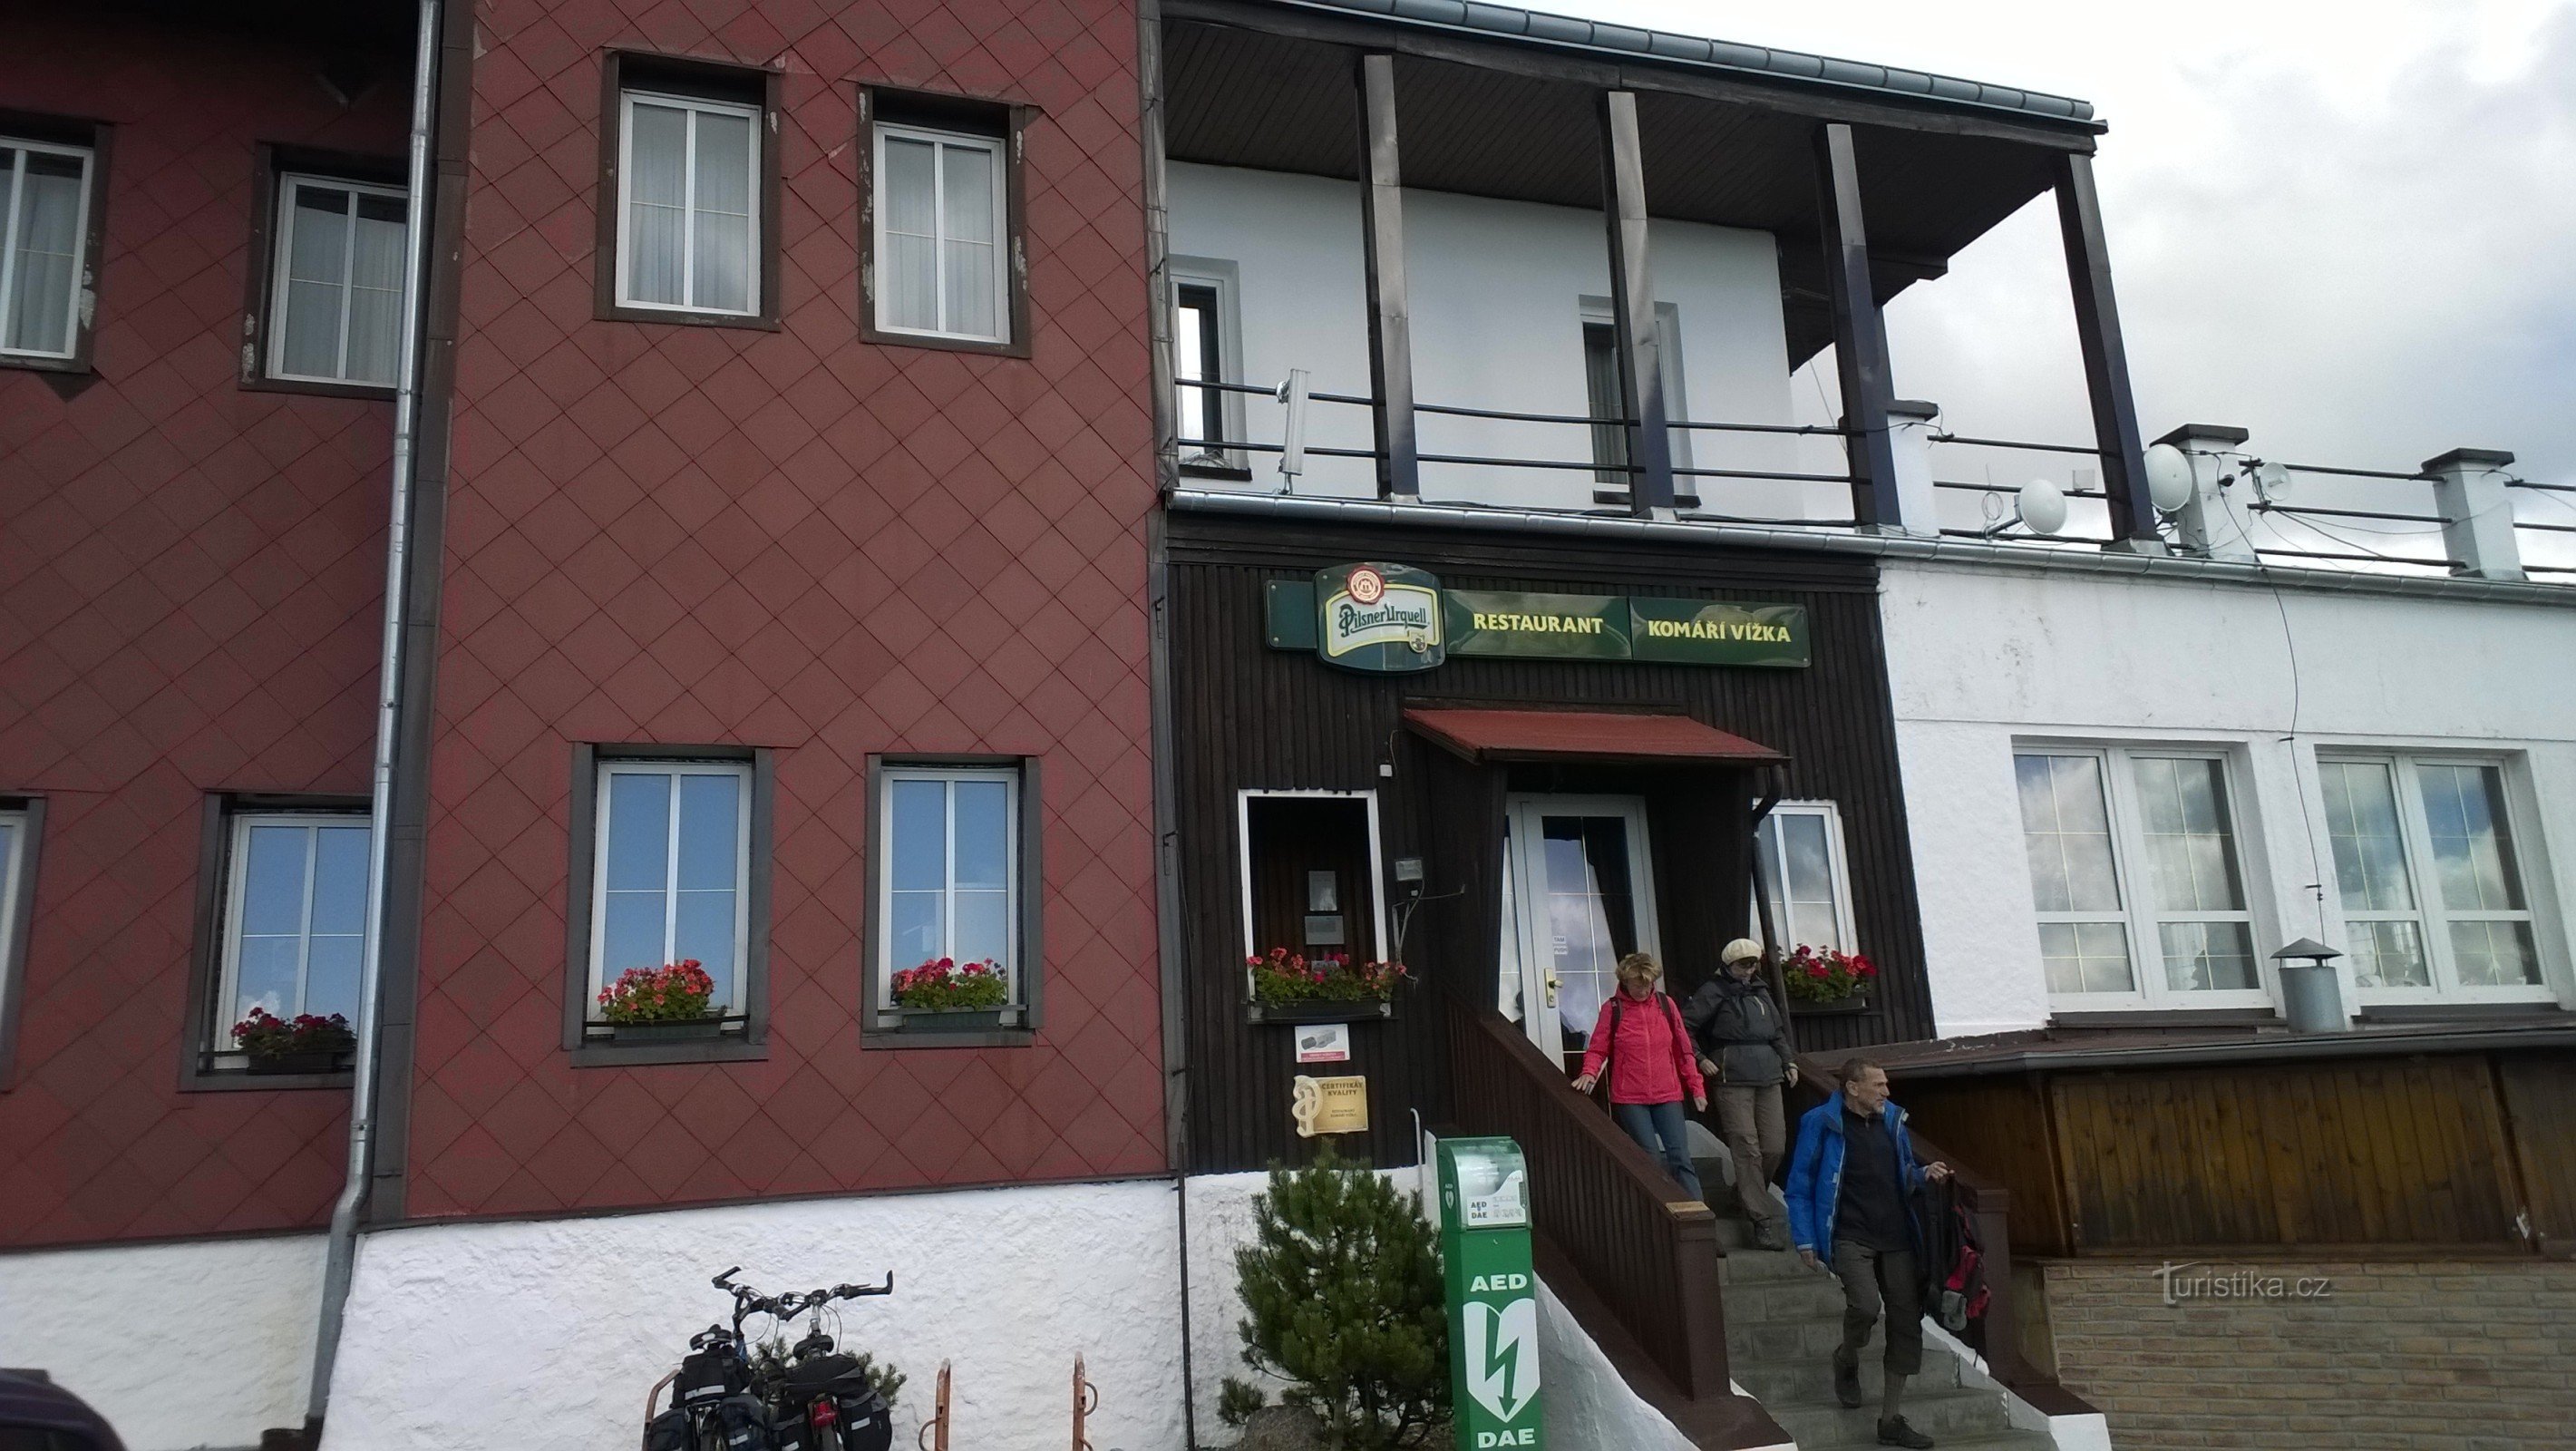 Ресторан на Комаржи Вижке.